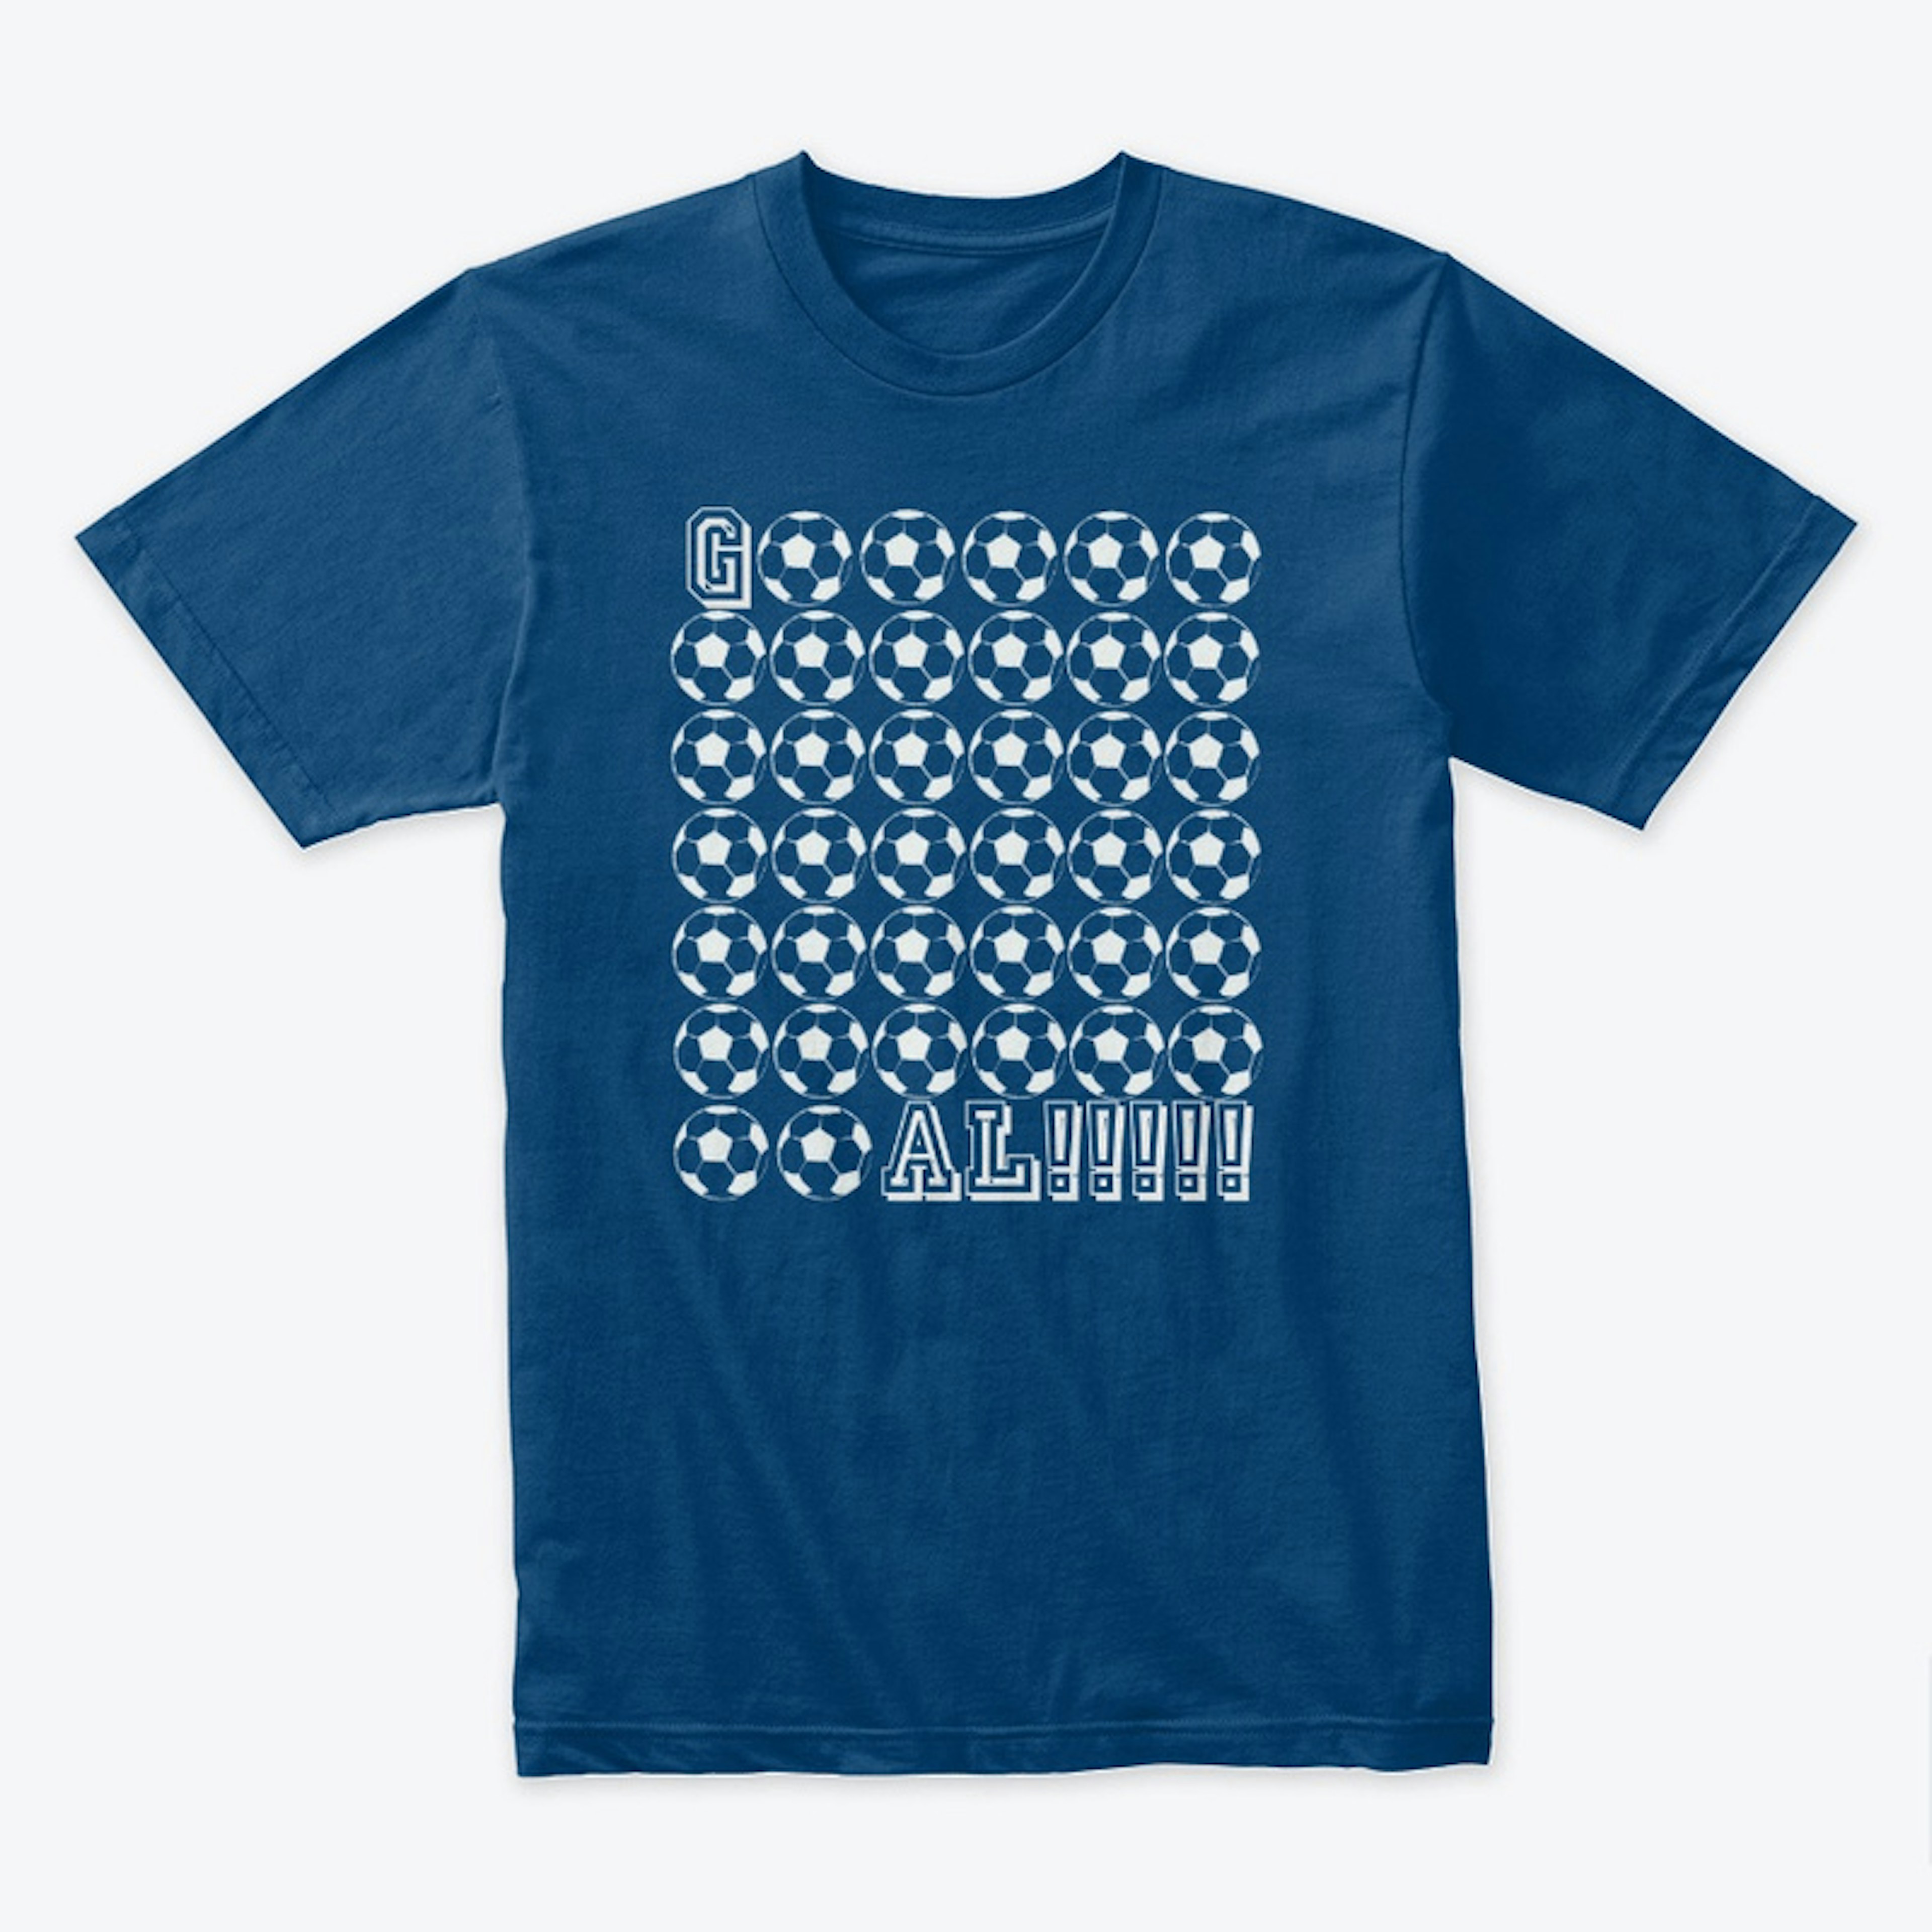 Soccer - Gooooooaaaal T-Shirt